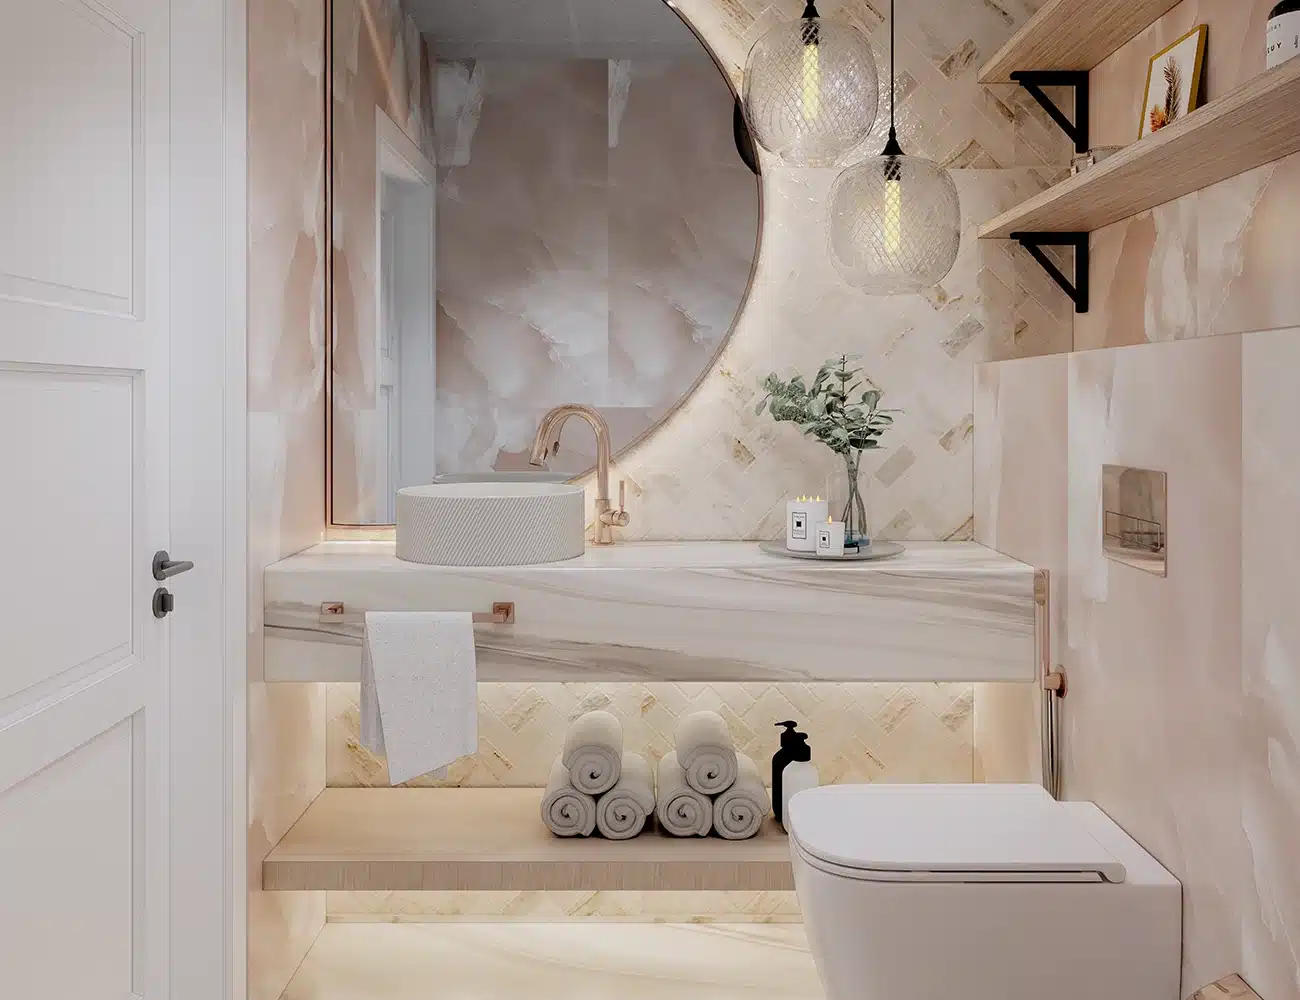 effectual Interior designing for washrooms 1